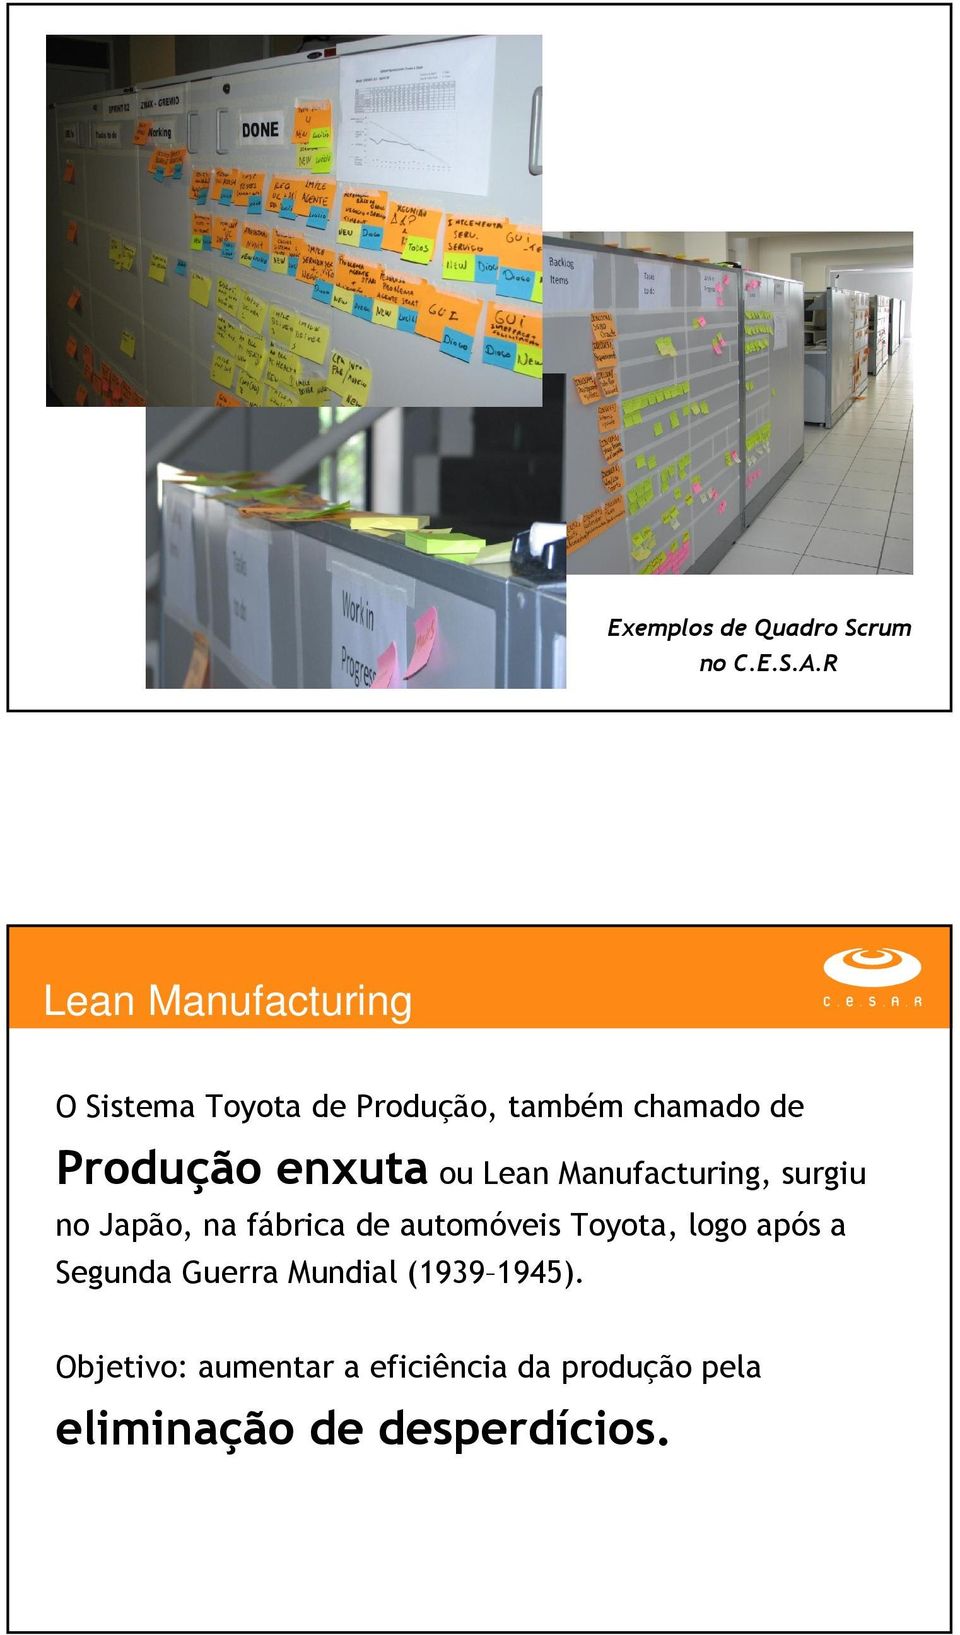 enxuta ou Lean Manufacturing, surgiu no Japão, na fábrica de automóveis Toyota,